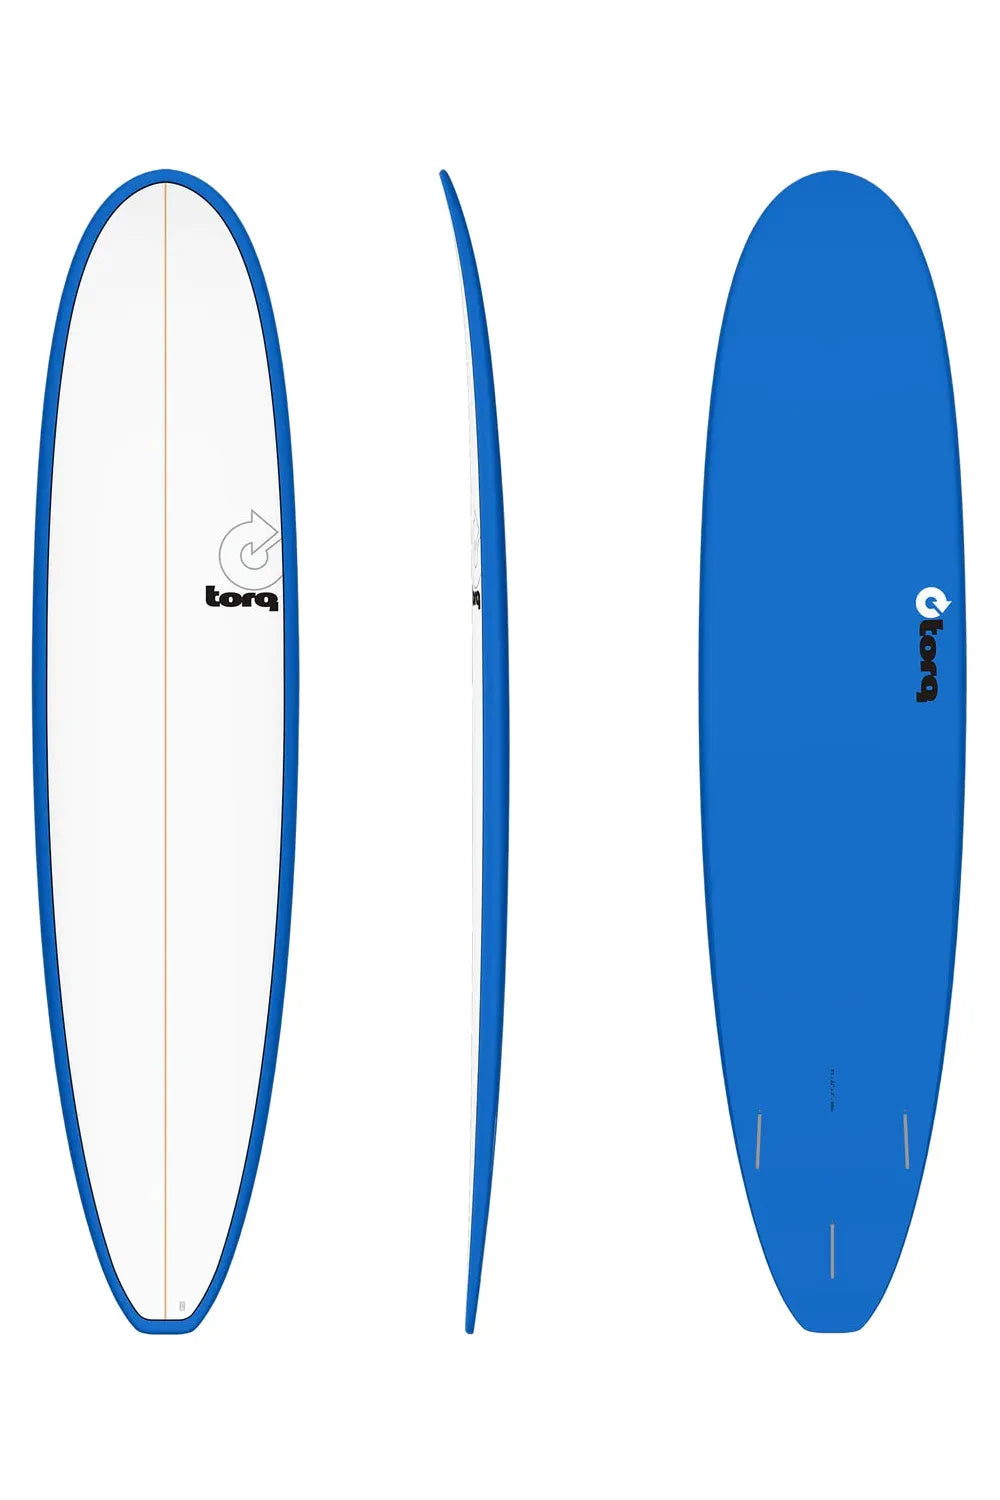 Torq TET Long Surfboard in Pinline Blue